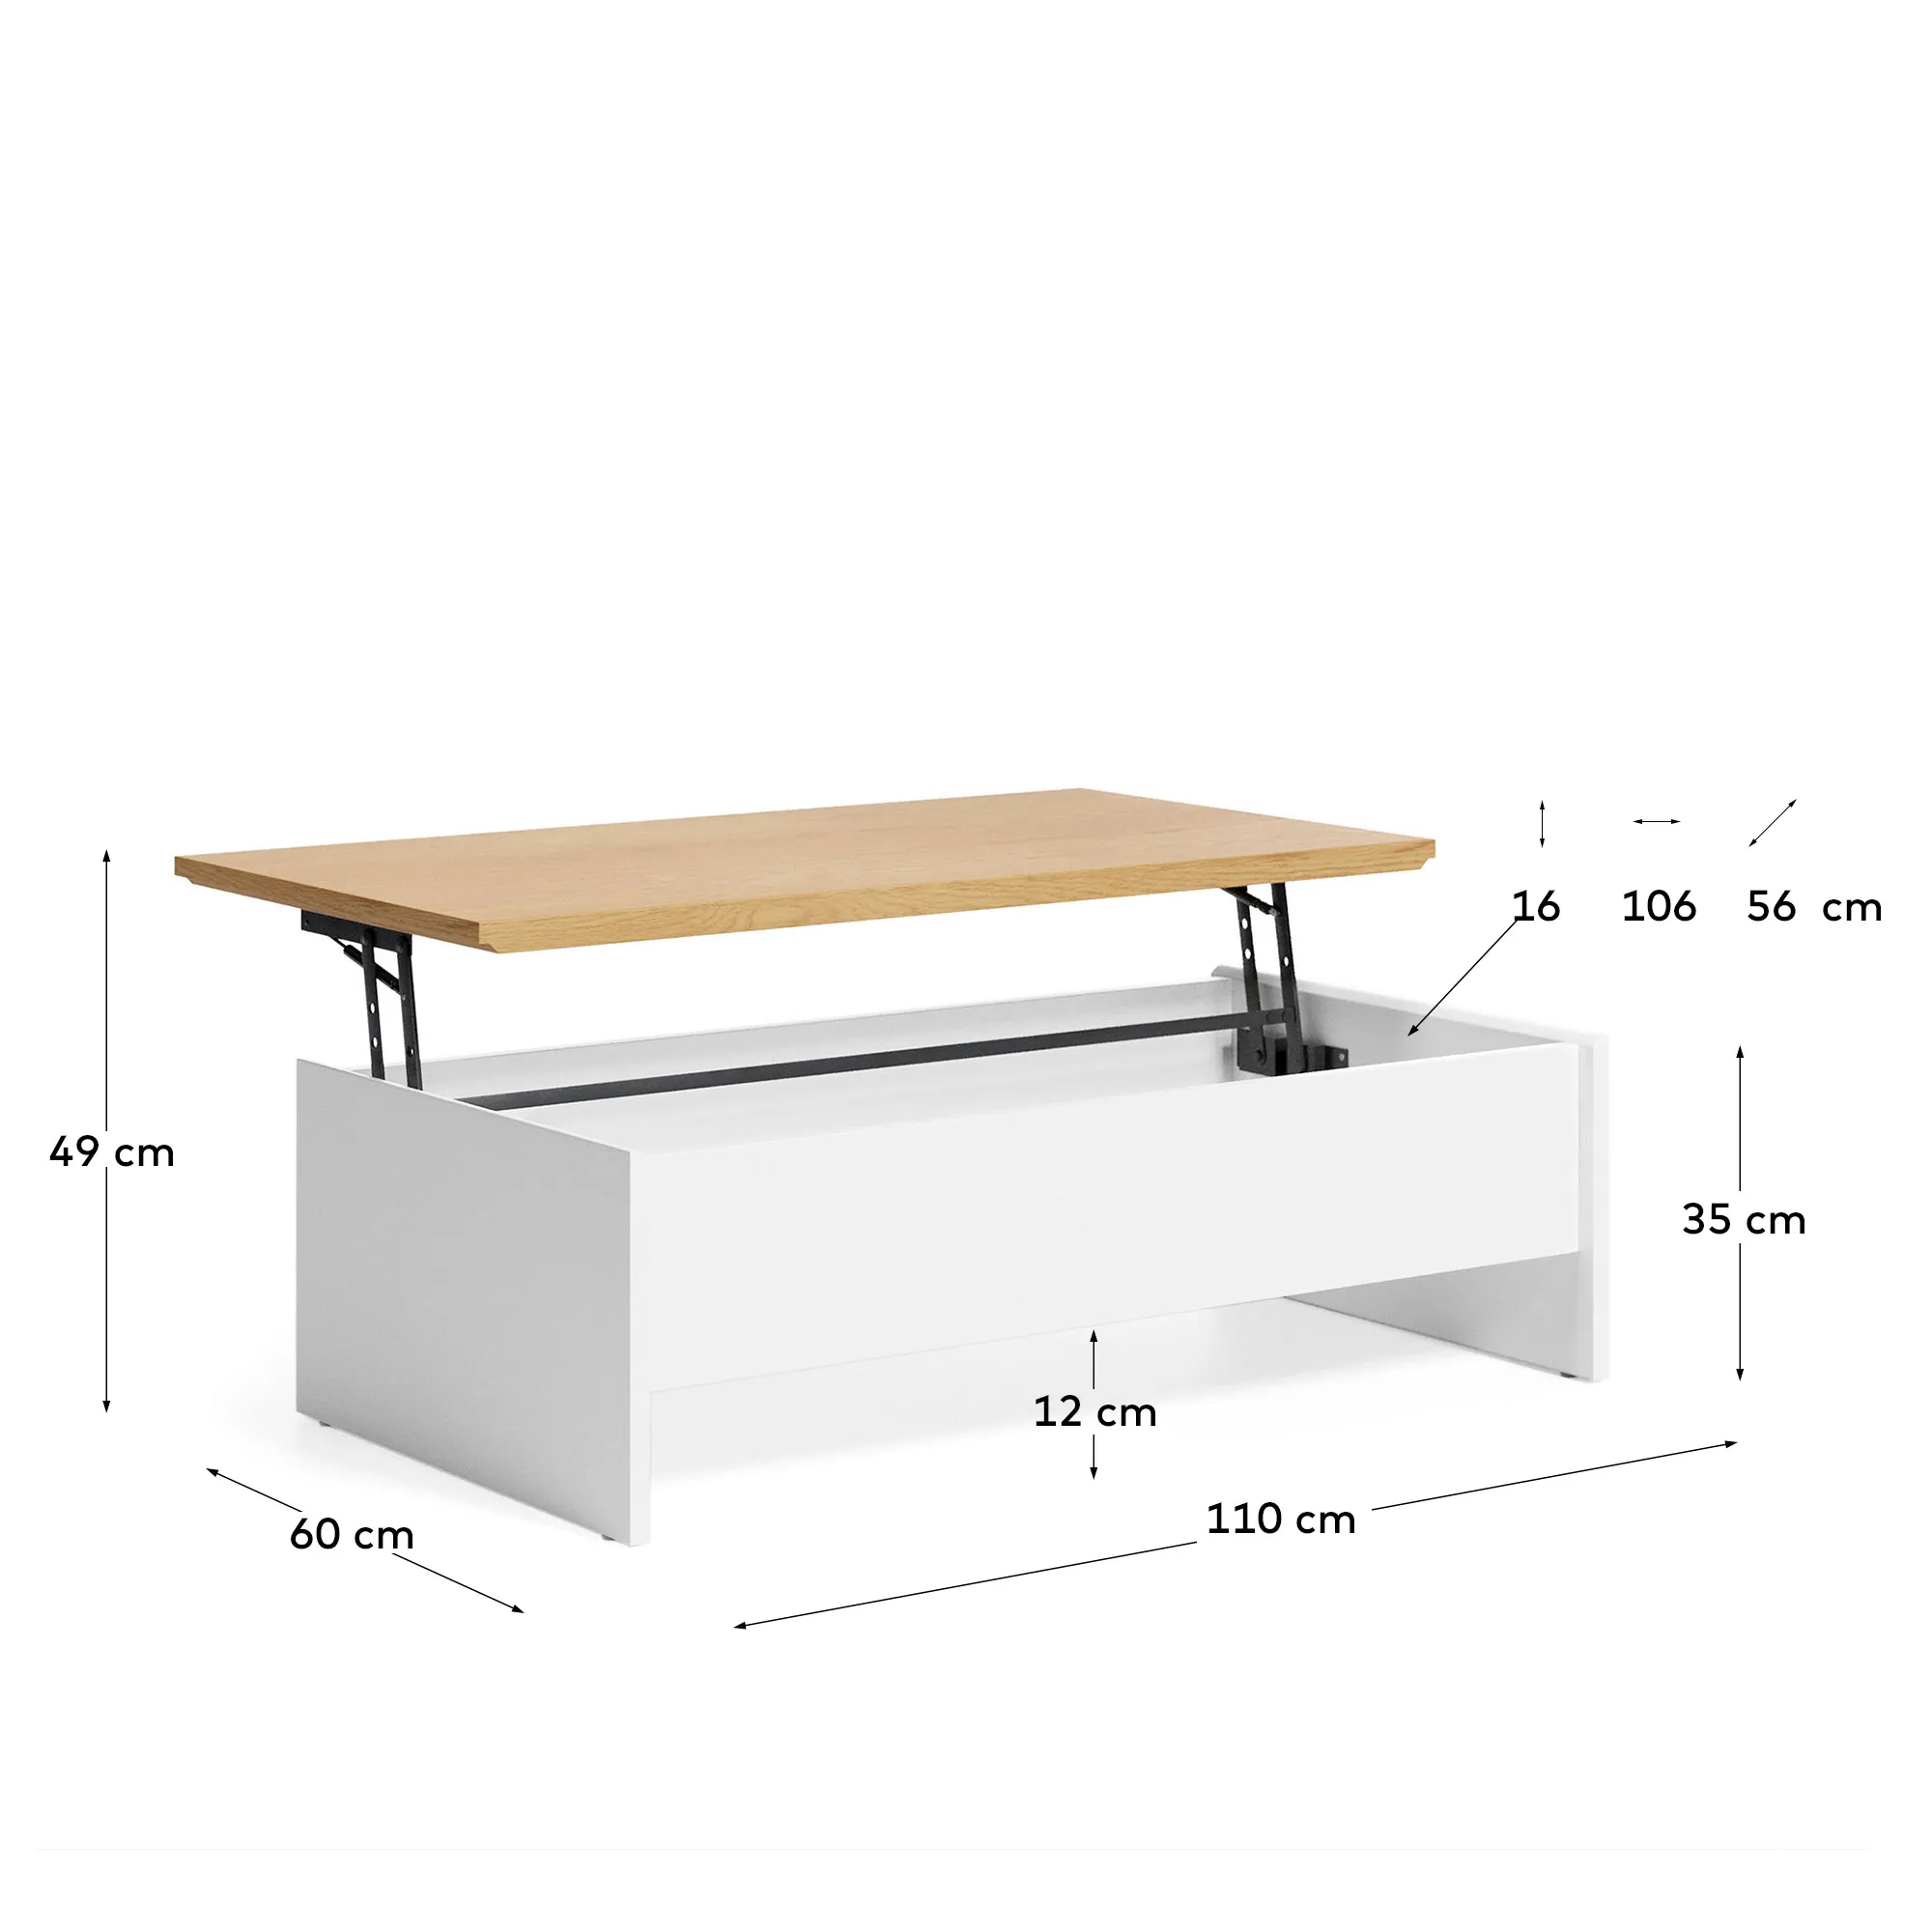 Журнальный столик трансформер La Forma Abilen шпон дуба 110 x 60 162676